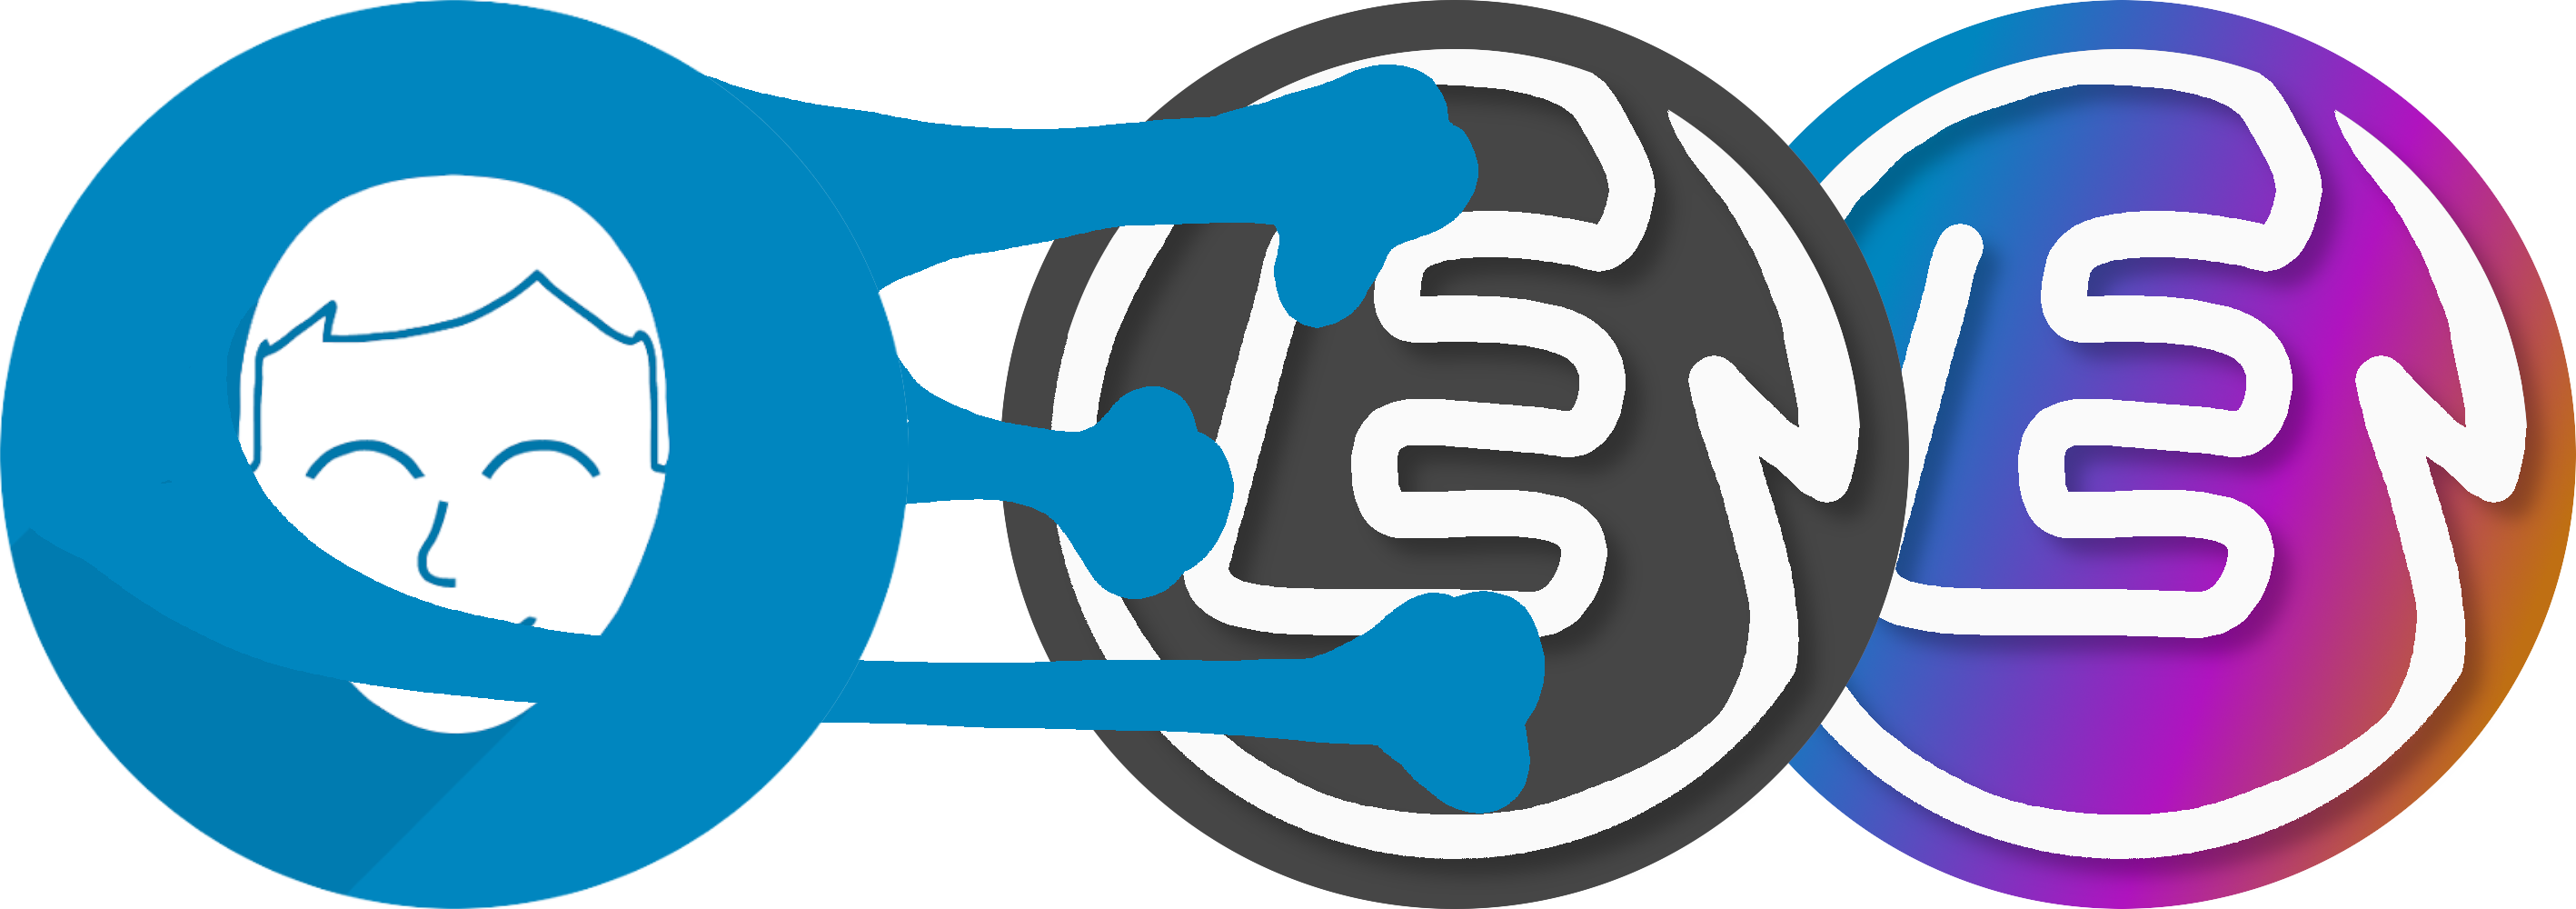 LeonsDepot Logo 2017 und das aktuelle verschmelzen